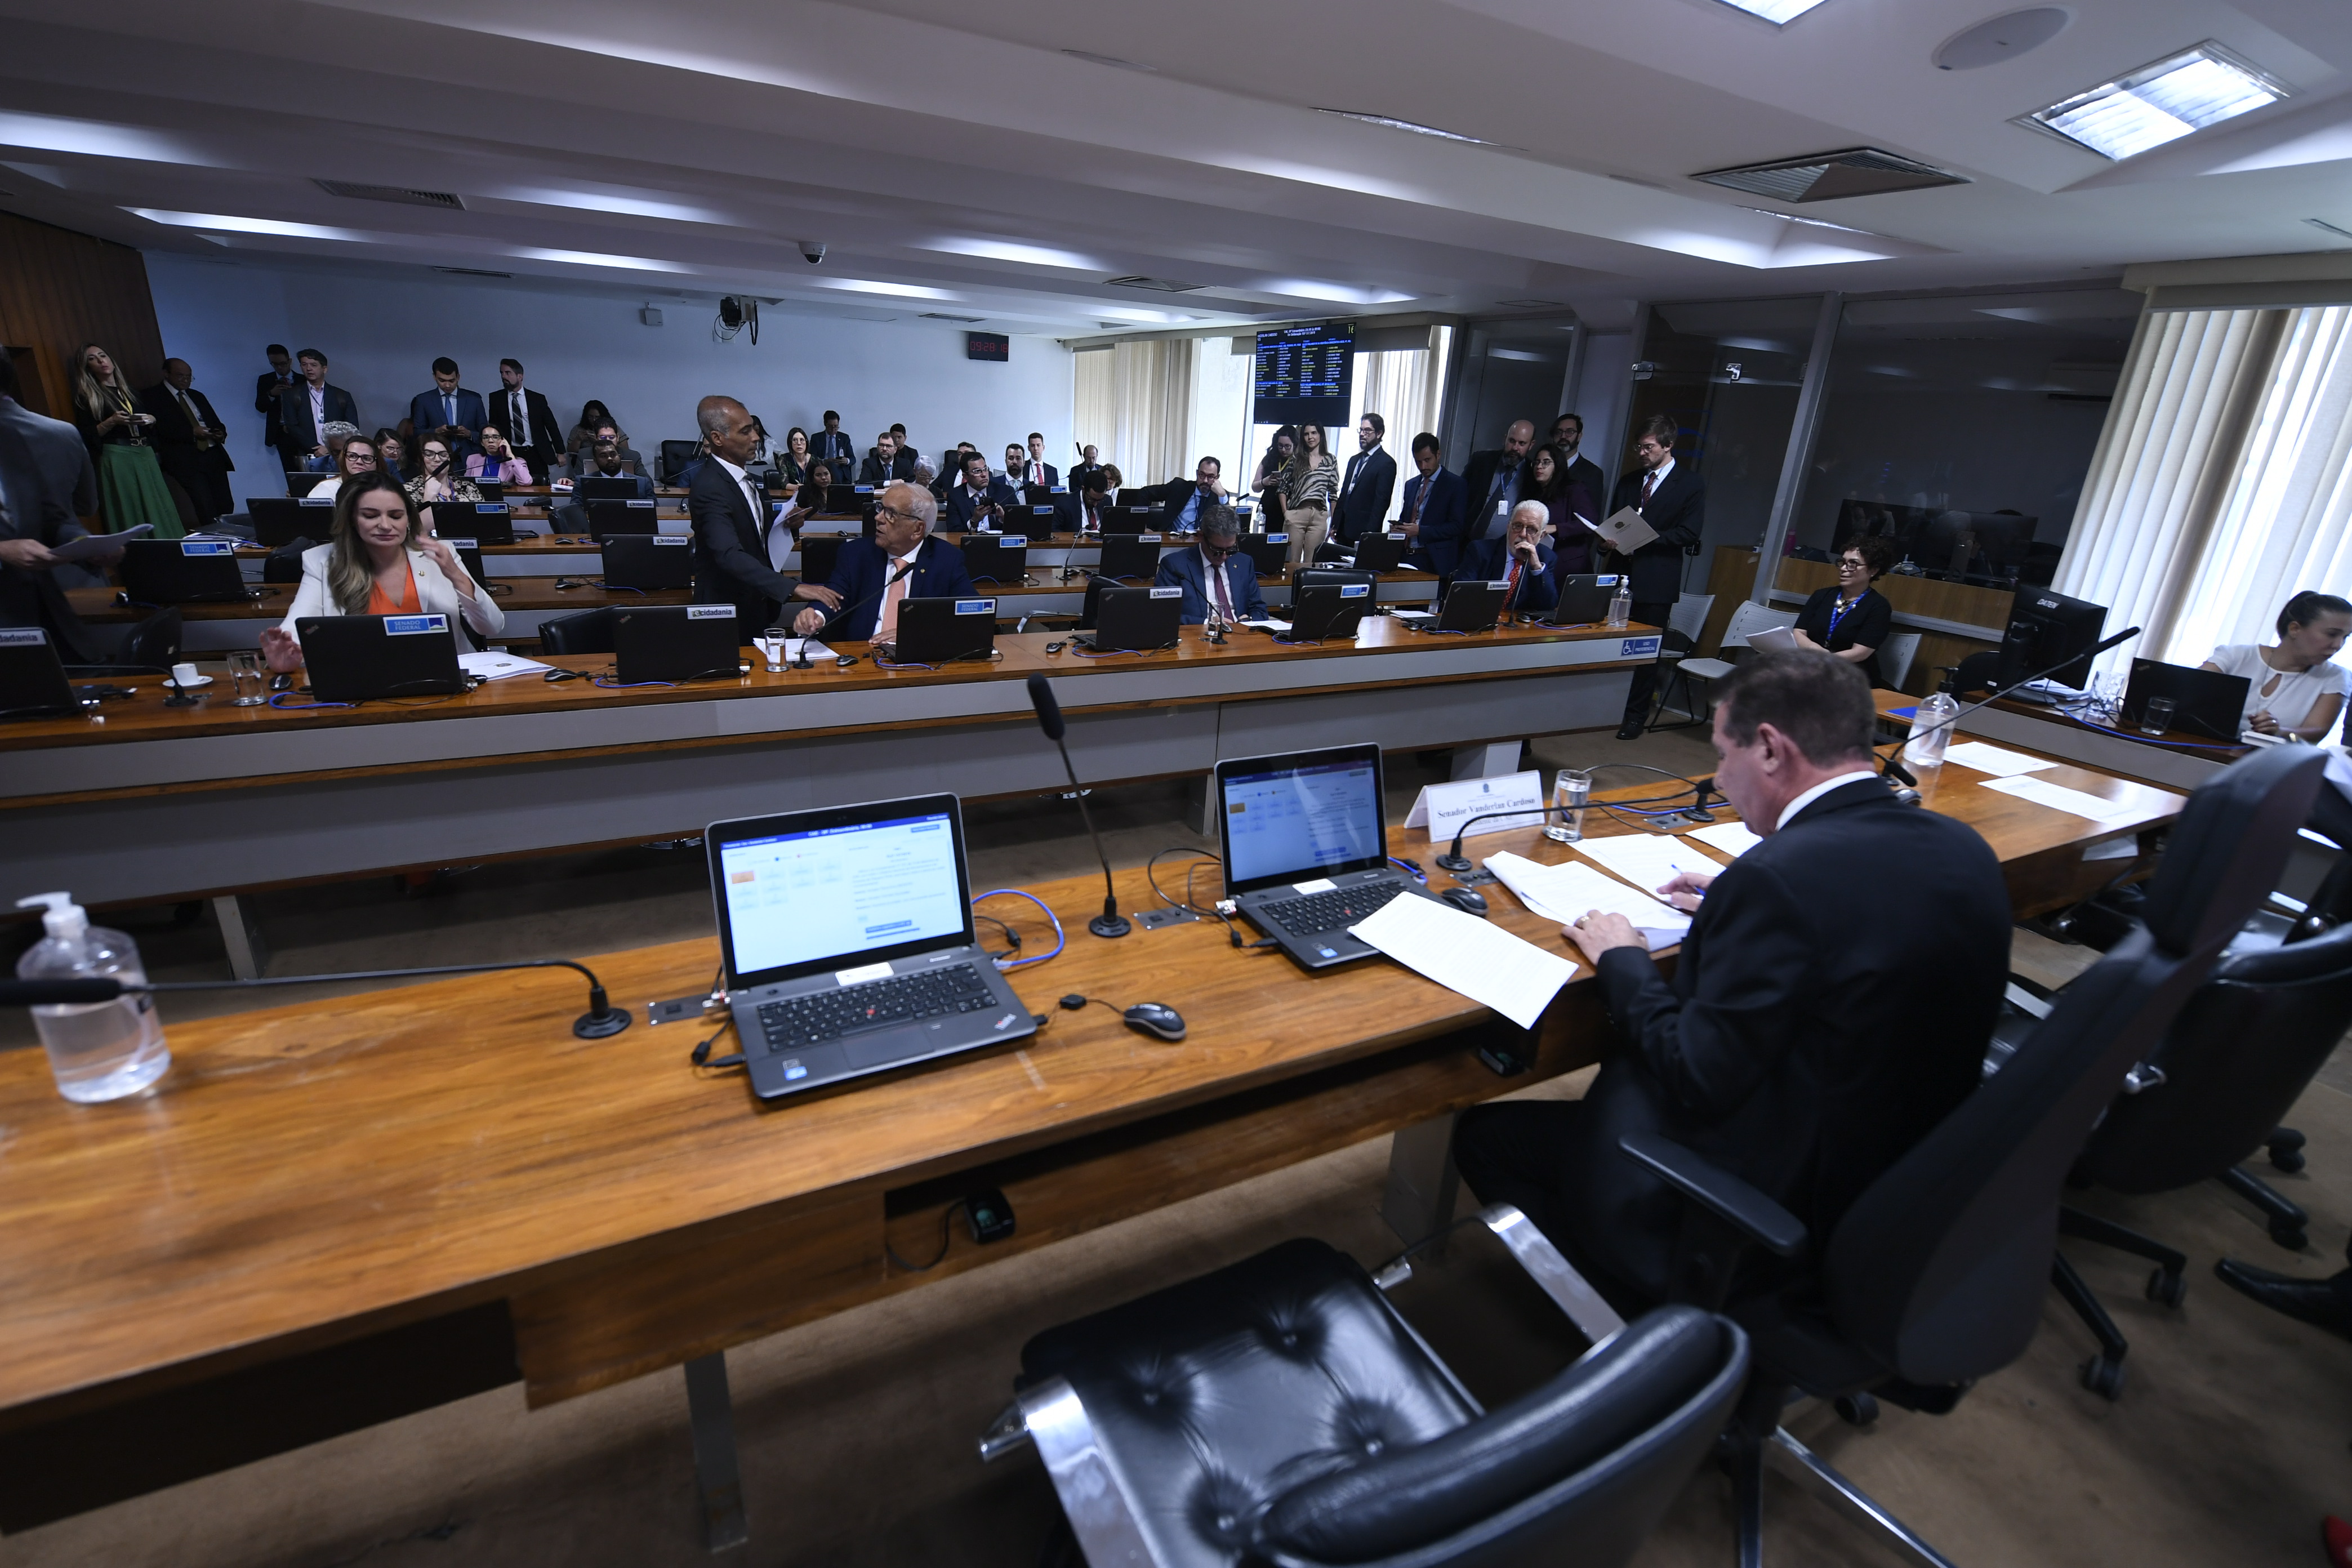 Bancada:
senadora Augusta Brito (PT-CE); 
senador Romário (PL-RJ); 
senador Oriovisto Guimarães (Podemos-PR); 
senador Rogério Carvalho (PT-SE);
senador Jaques Wagner (PT-BA).